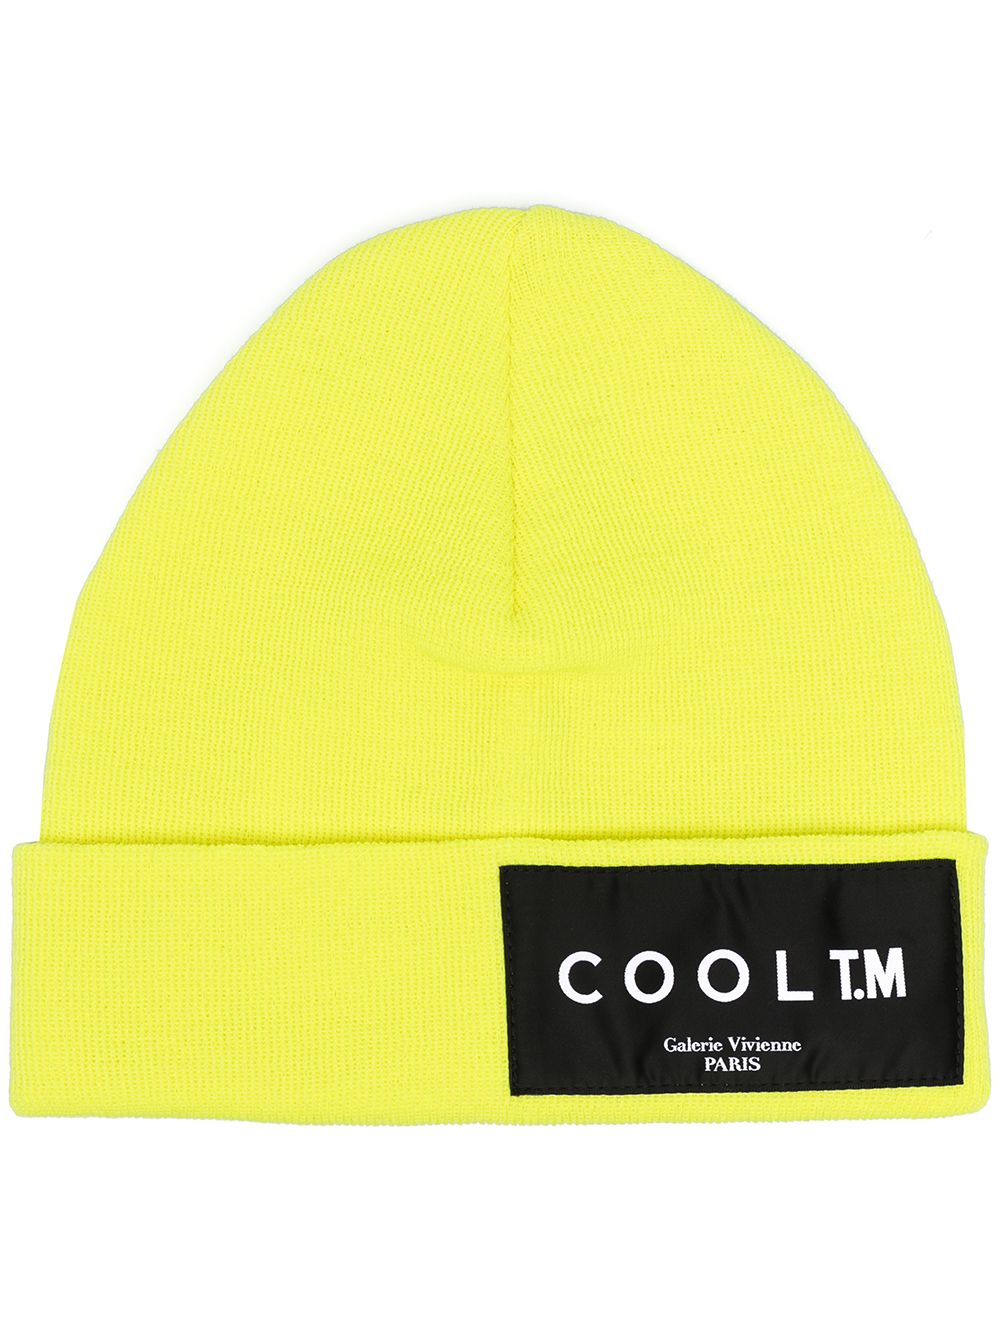 фото Cool t.m шапка бини с нашивкой-логотипом